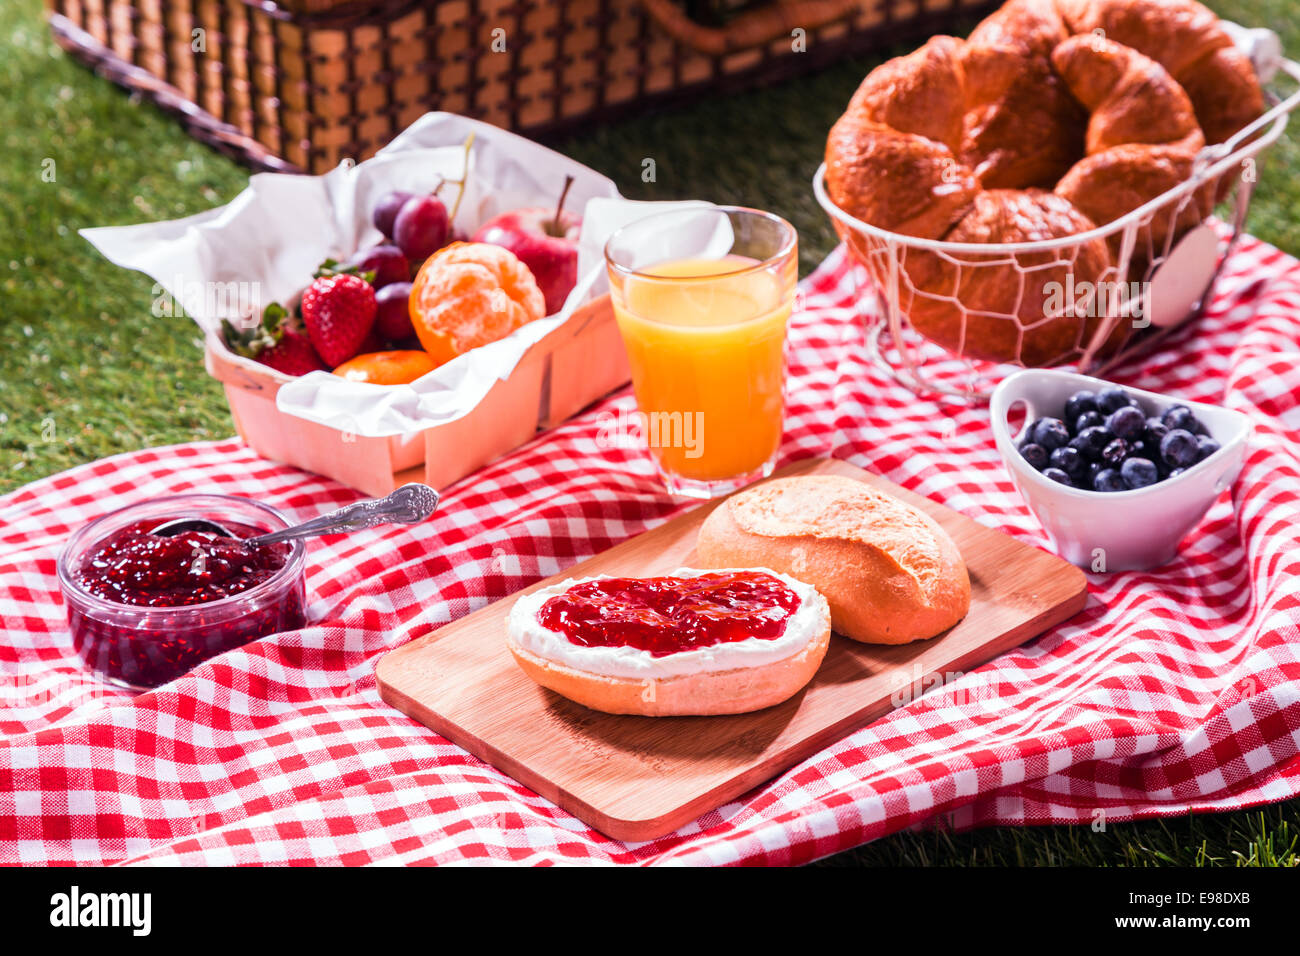 Köstliche Sommer-Picknick für Vegetarier ausgebreitet auf einem roten und weißen aufgegebenes Tuch auf dem Rasen mit goldenen frisch gebackenen Croissants, Orangensaft, frisches Obst und Obstsalat und ein Brötchen mit Marmelade Stockfoto